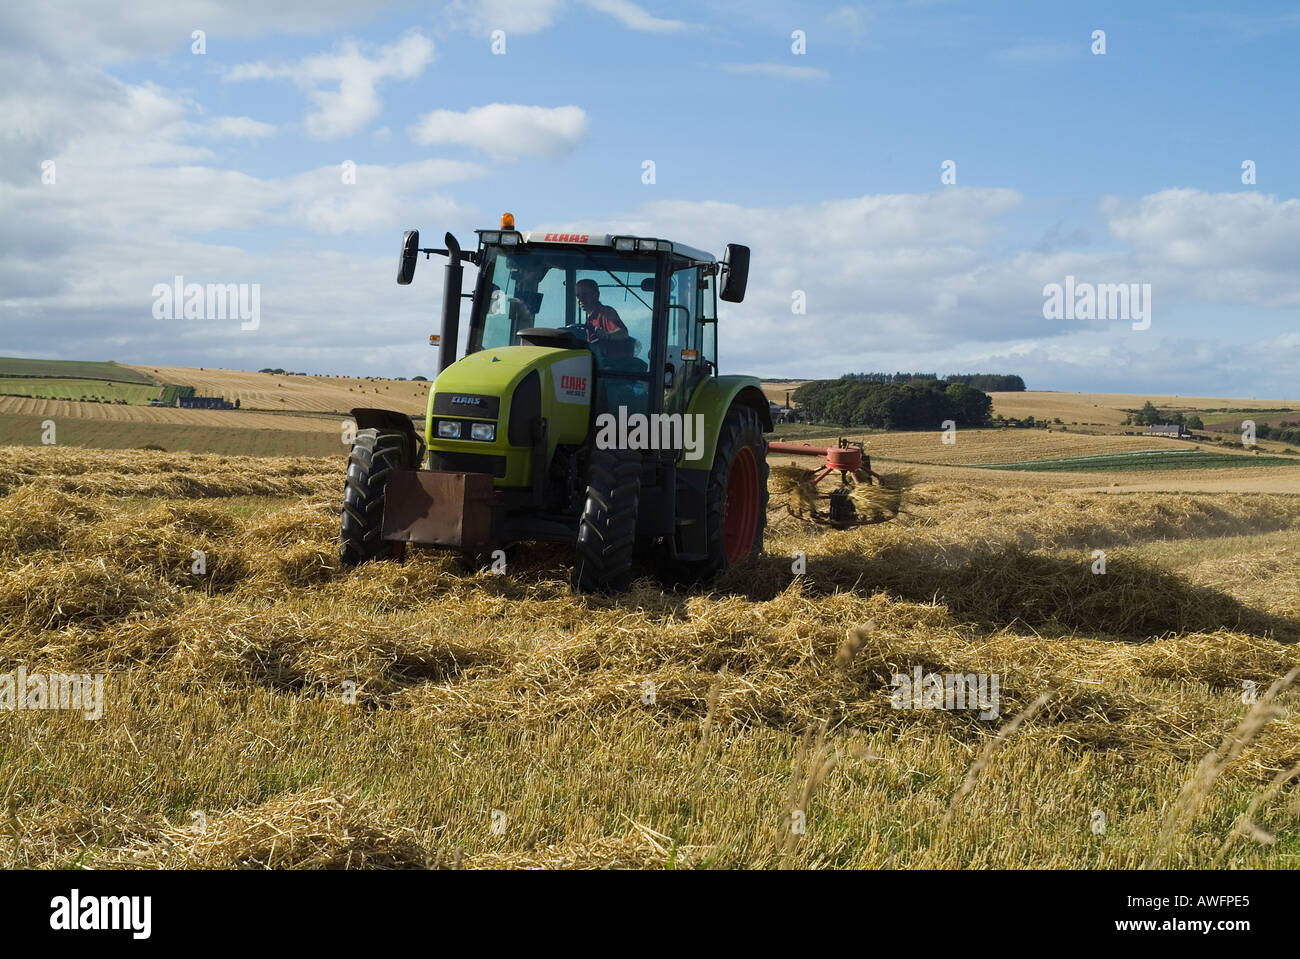 dh séchage des champs de terre agricole TODHEAD POINT KINCARDINESHIRE tracteur épandage d'orge récolte de champs au royaume-uni les tracteurs verts récoltant en écosse Banque D'Images